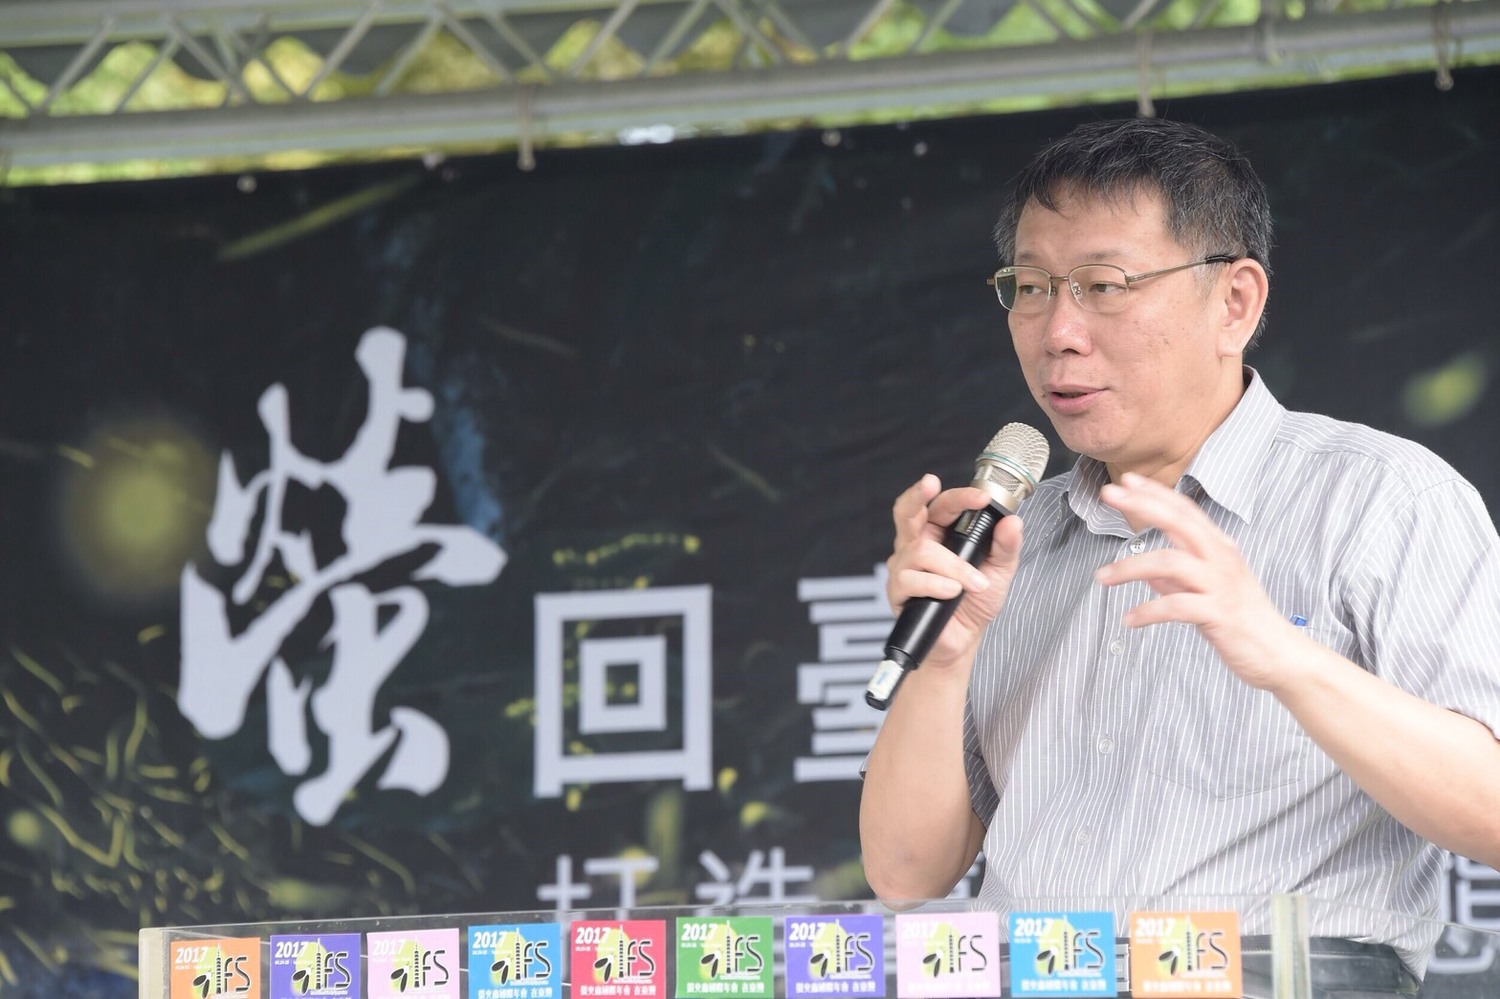 Re: [轉錄] 台灣民眾黨FB 年金改革激化社會對立